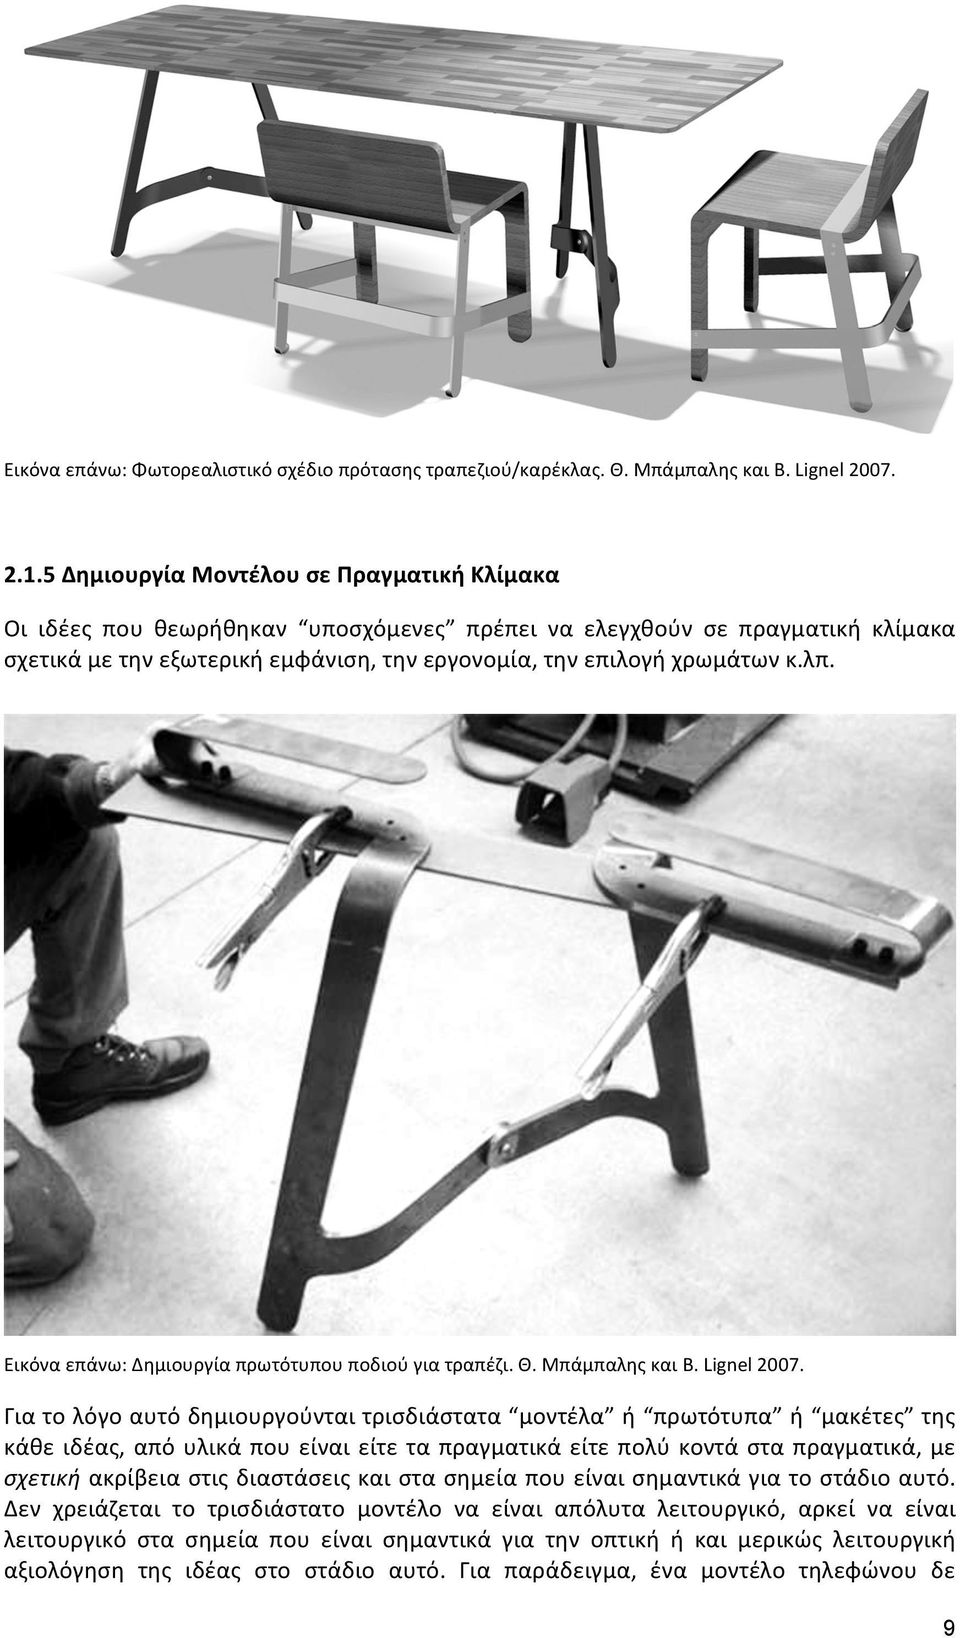 Εικόνα επάνω: Δημιουργία πρωτότυπου ποδιού για τραπέζι. Θ. Μπάμπαλης και B. Lignel 2007.